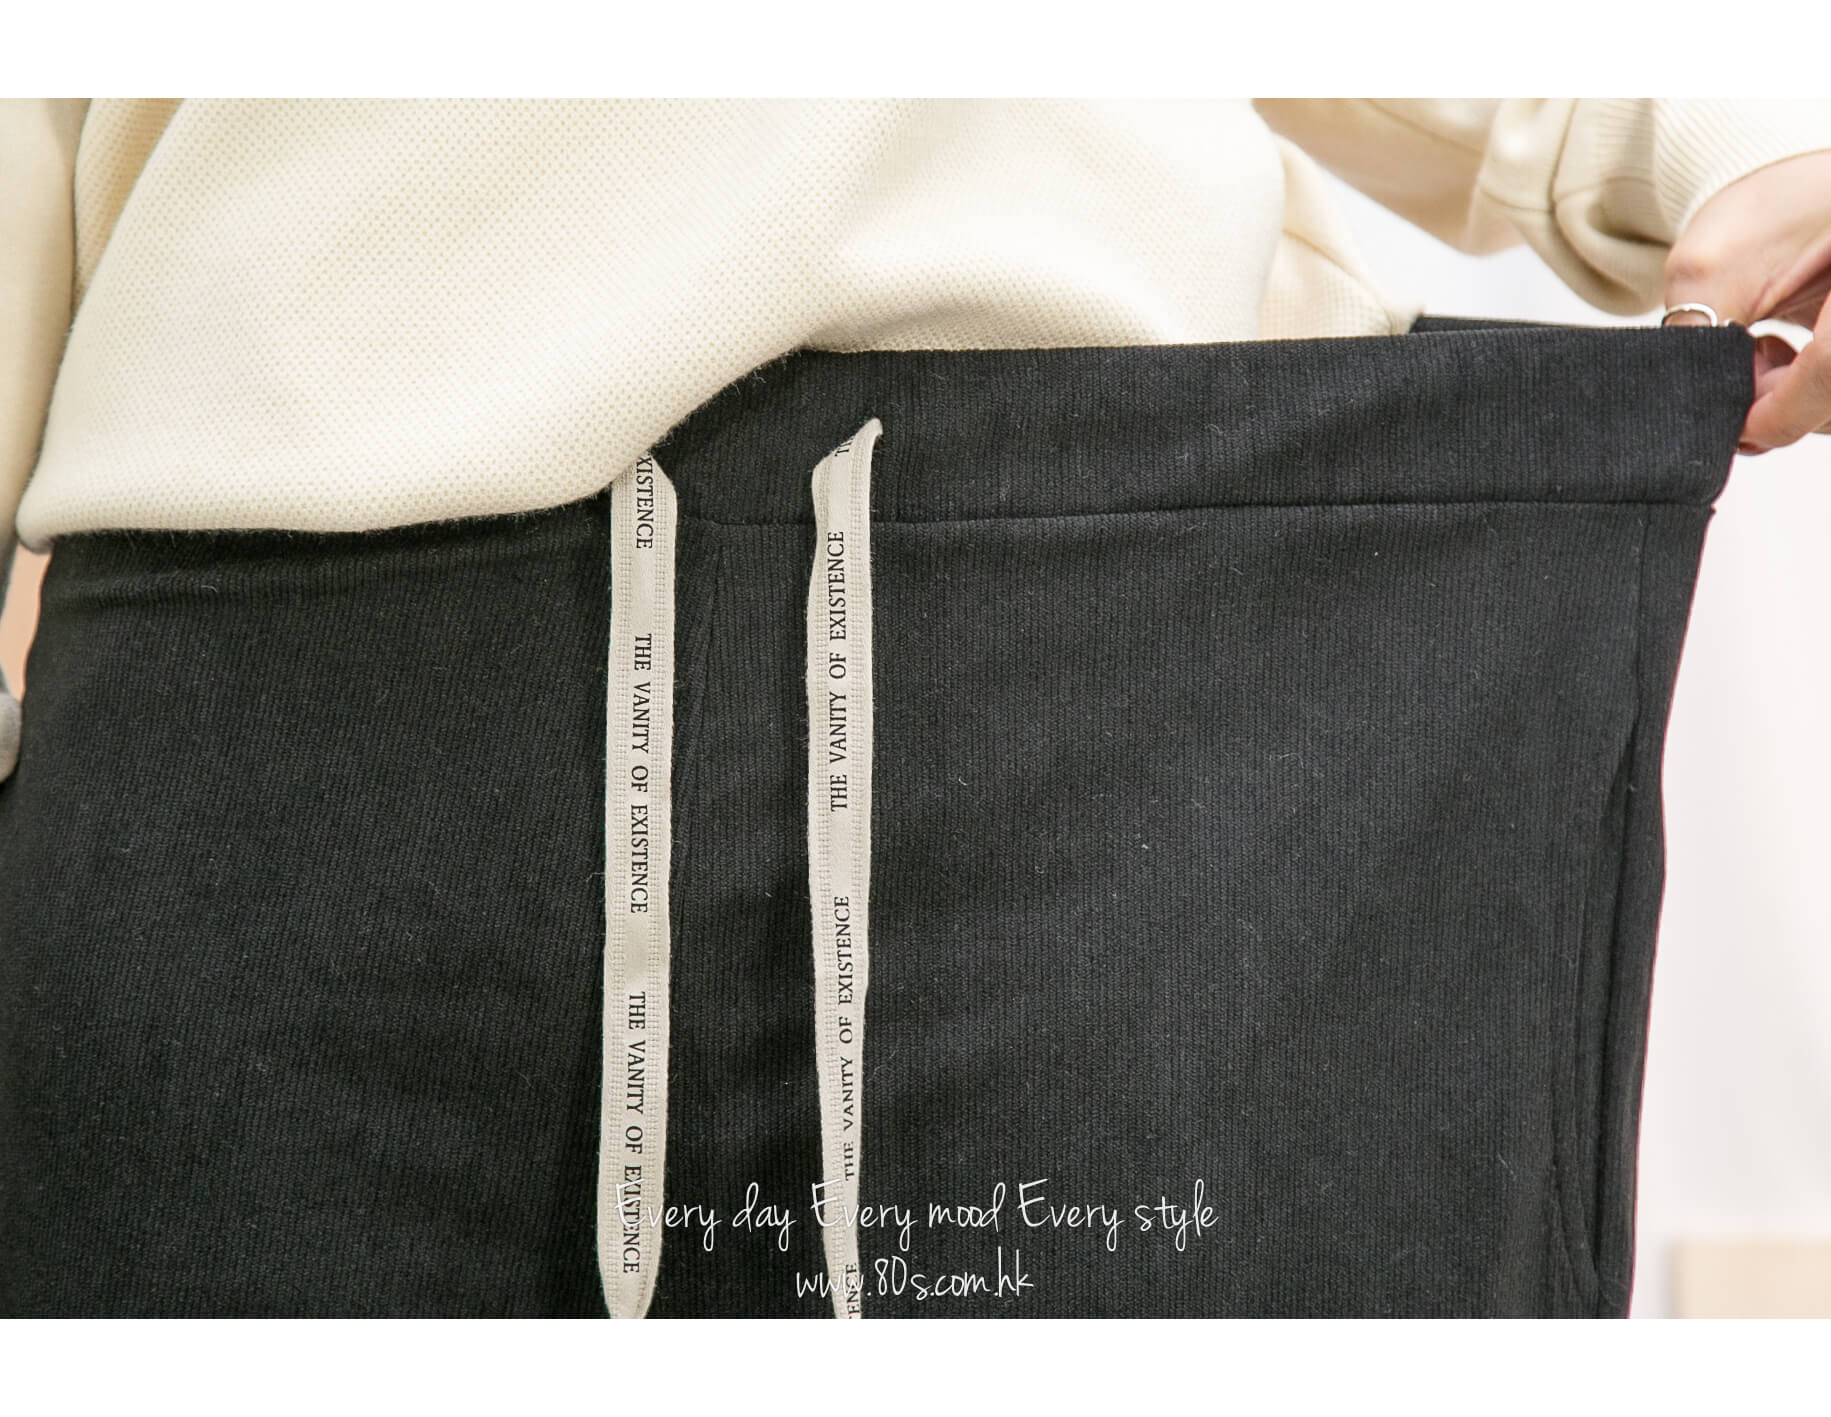 2215-1198 -隨意・優美感-橡根腰束繩 ‧ 薄燈芯絨料闊褲 (韓國)  